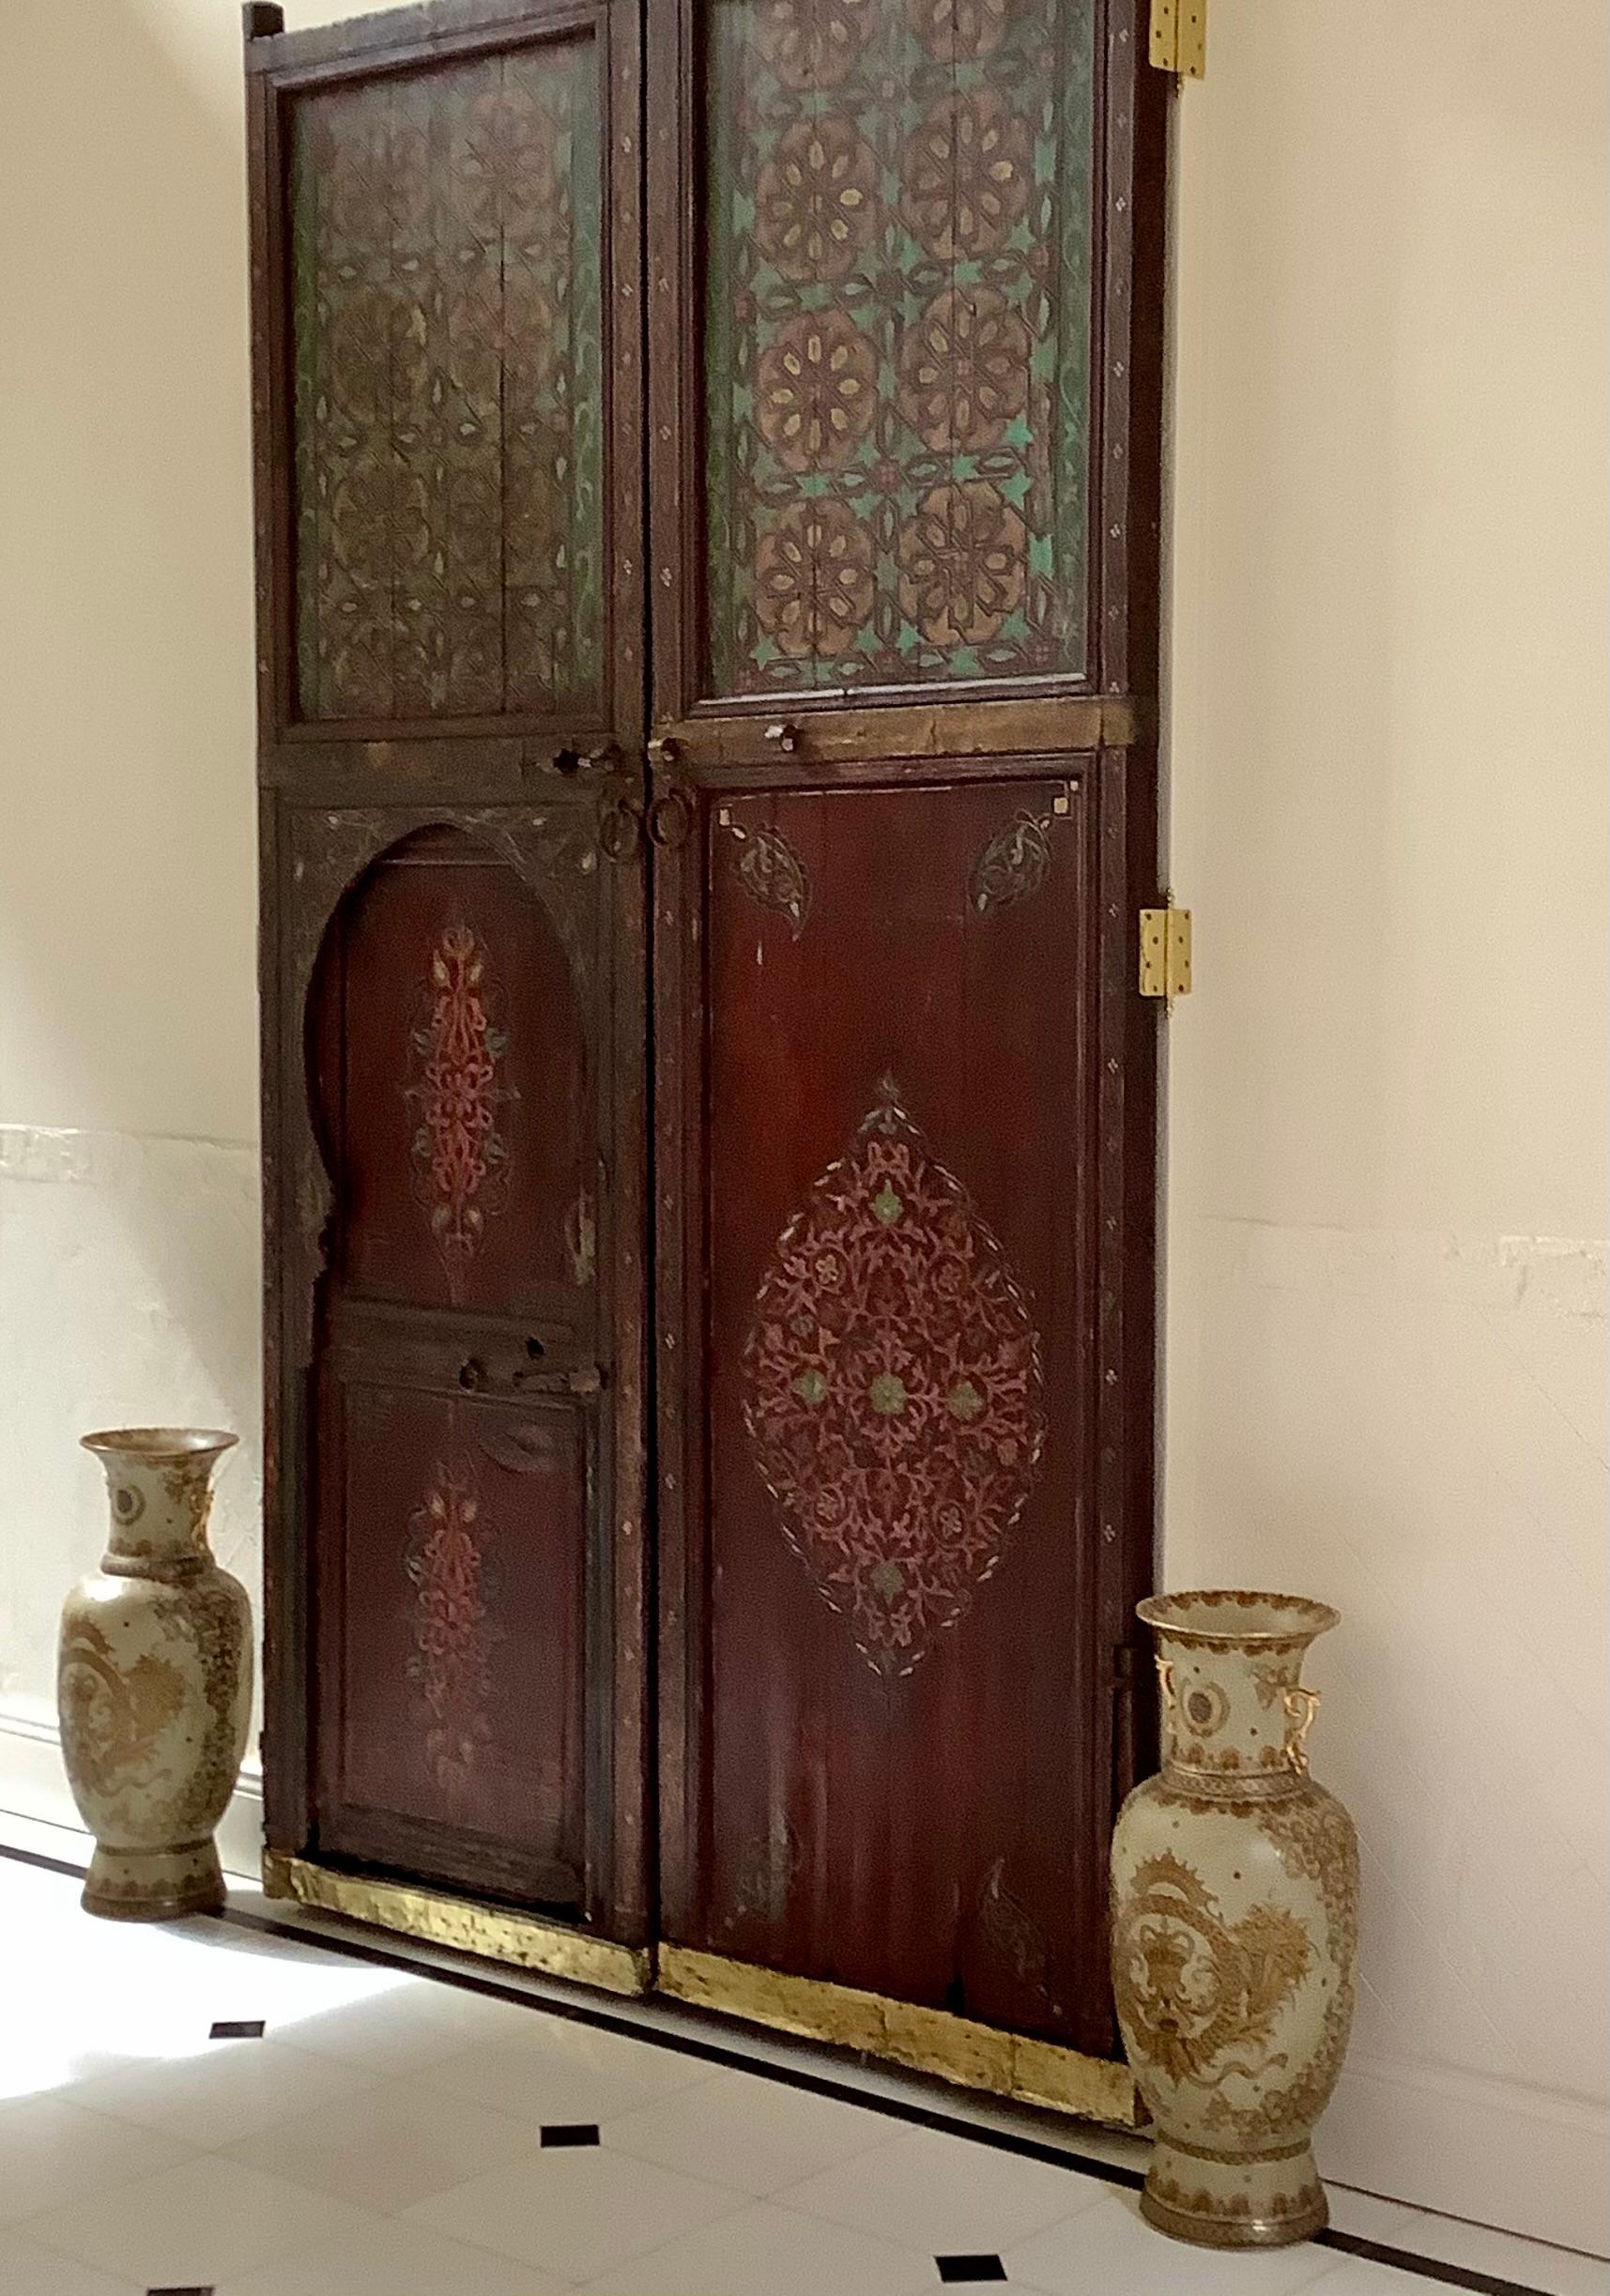 Portes doubles marocaines anciennes peintes à la main du 19ème siècle

Ces portes doubles sont des antiquités du 19e siècle, riches en couleurs et en œuvres d'art. Elles sont très grandes et mesurent plus de 12 pieds de haut. Chaque panneau est